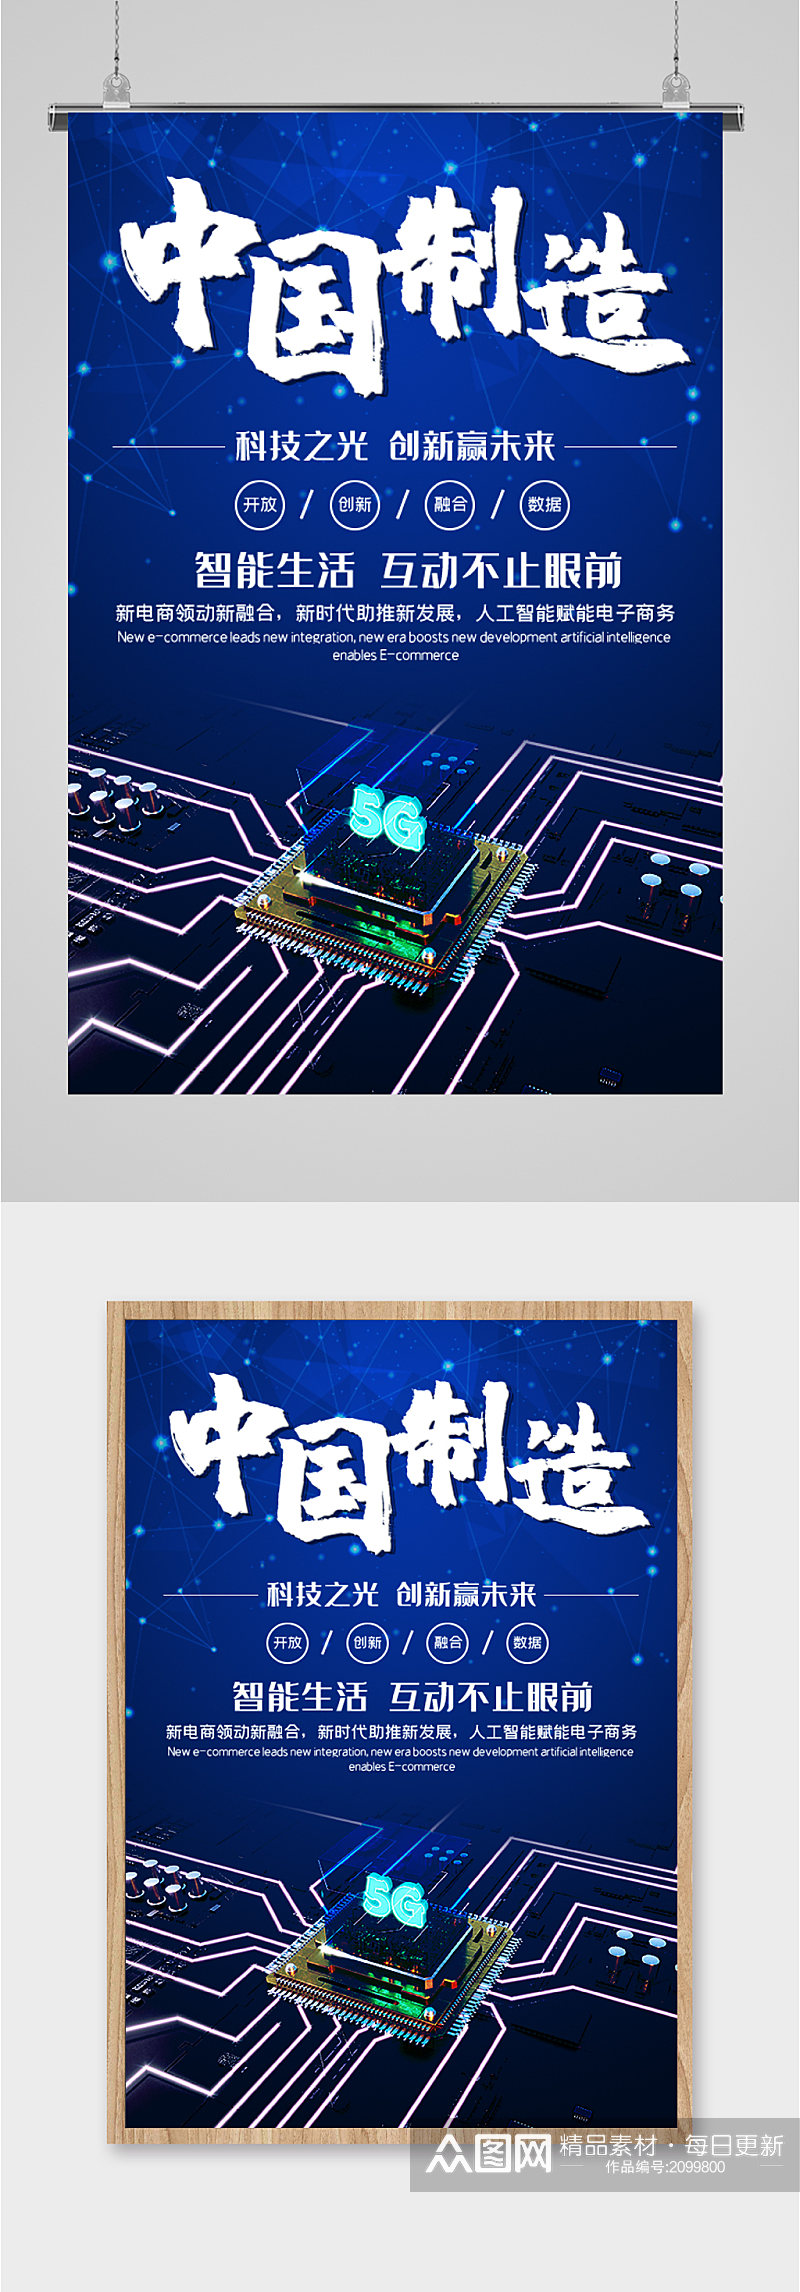 中国5G芯片海报素材